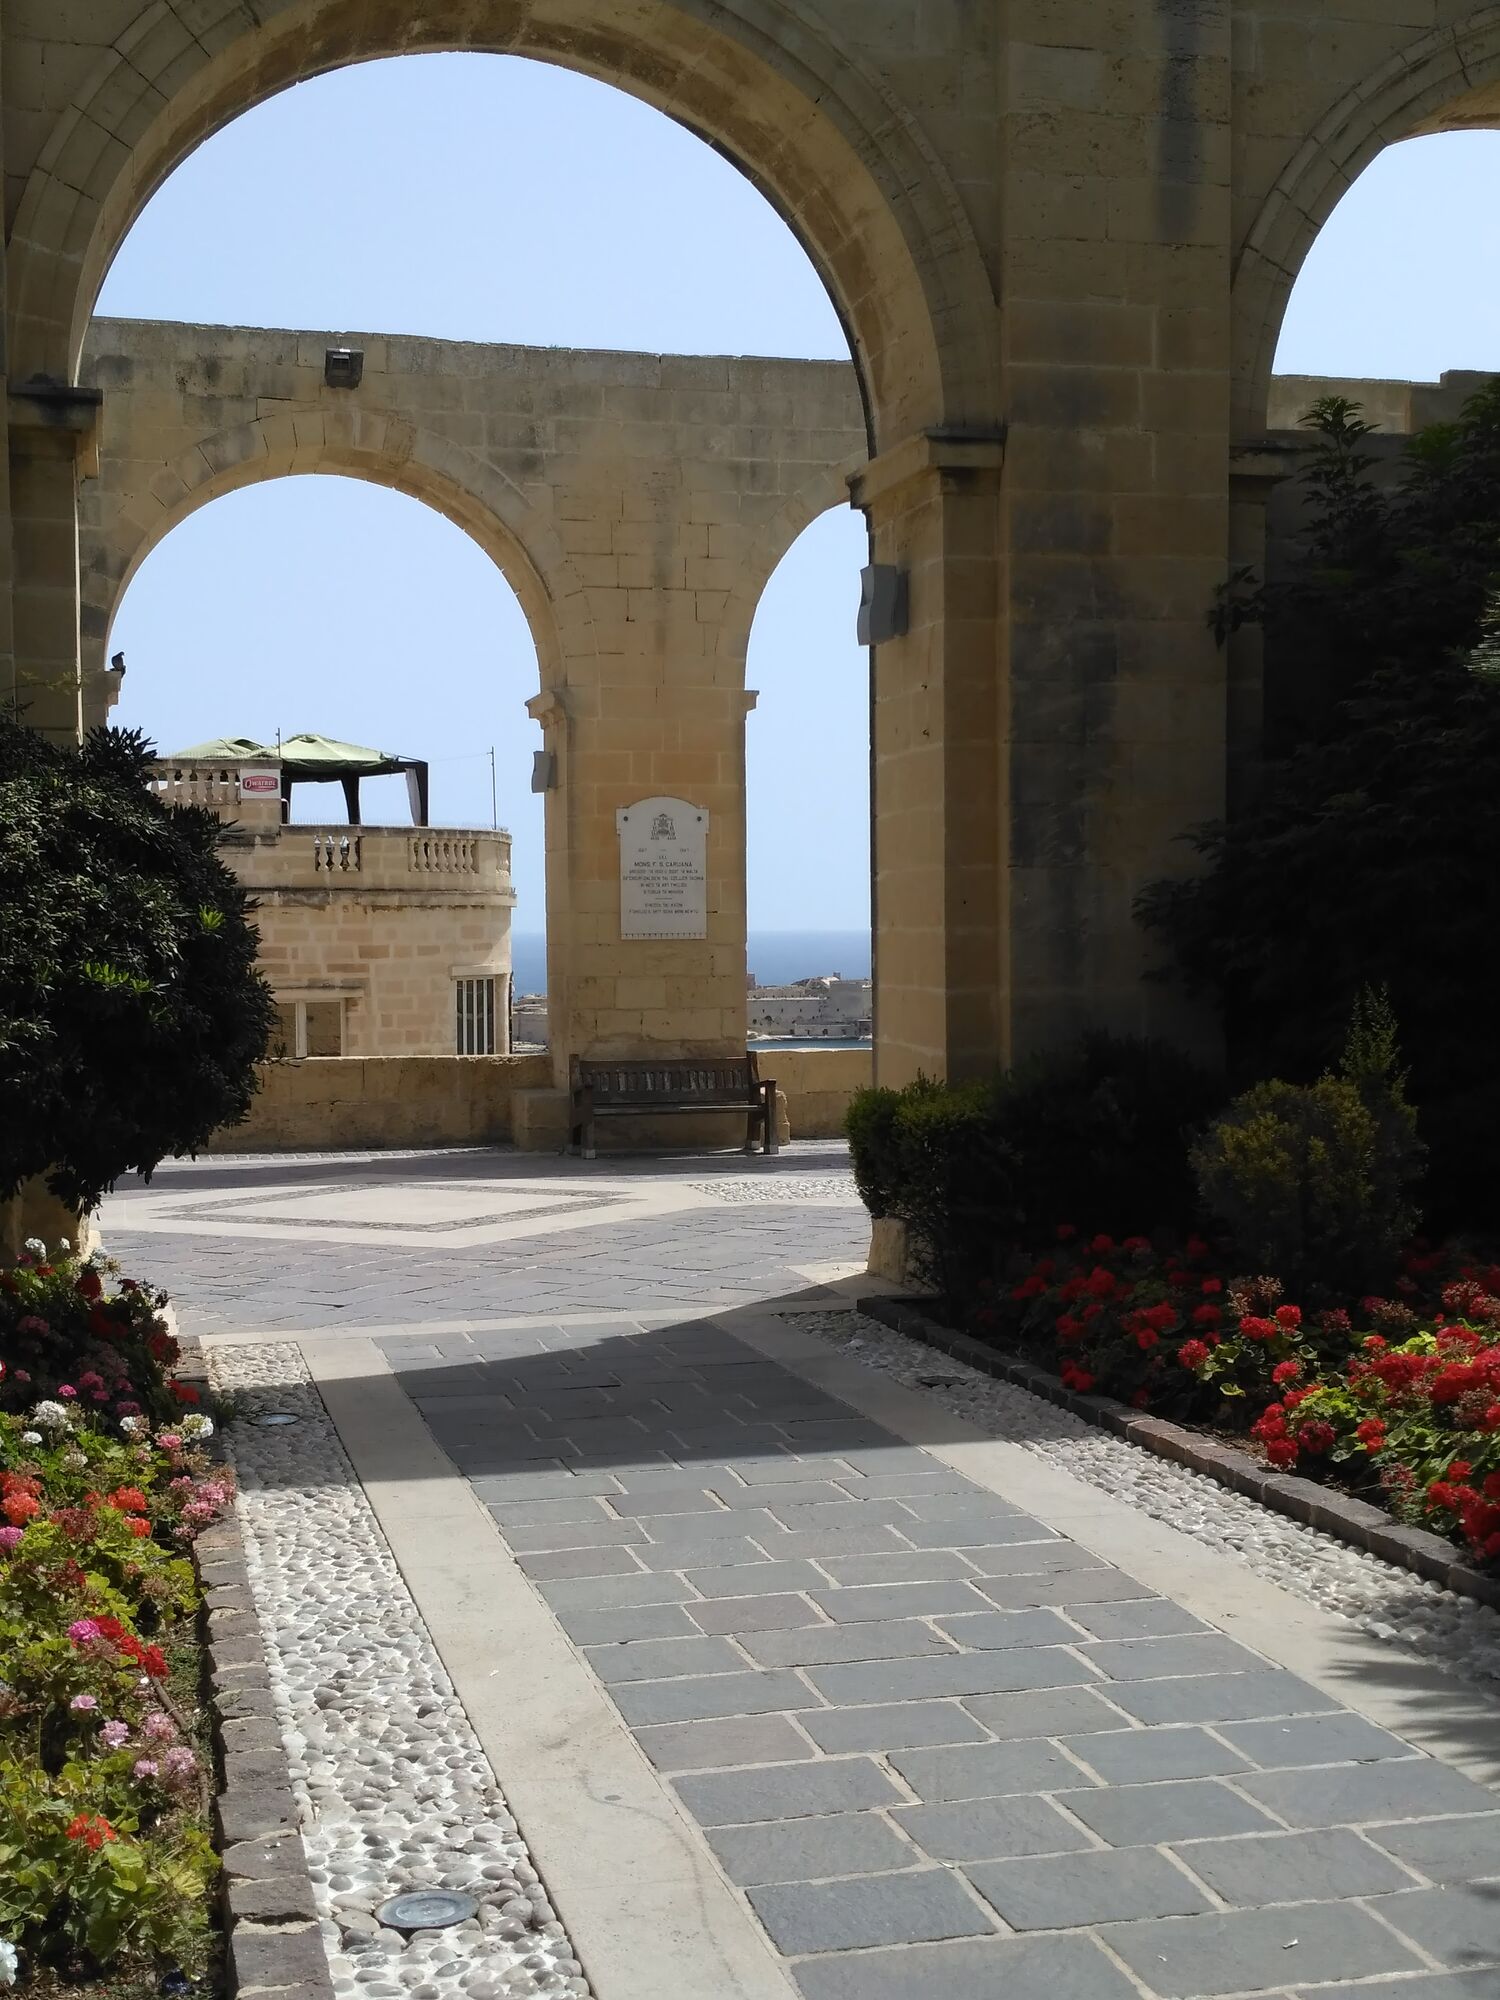 "Мальта - країна недешева": мандрівниця з України розповіла про відпочинок на казковому острові